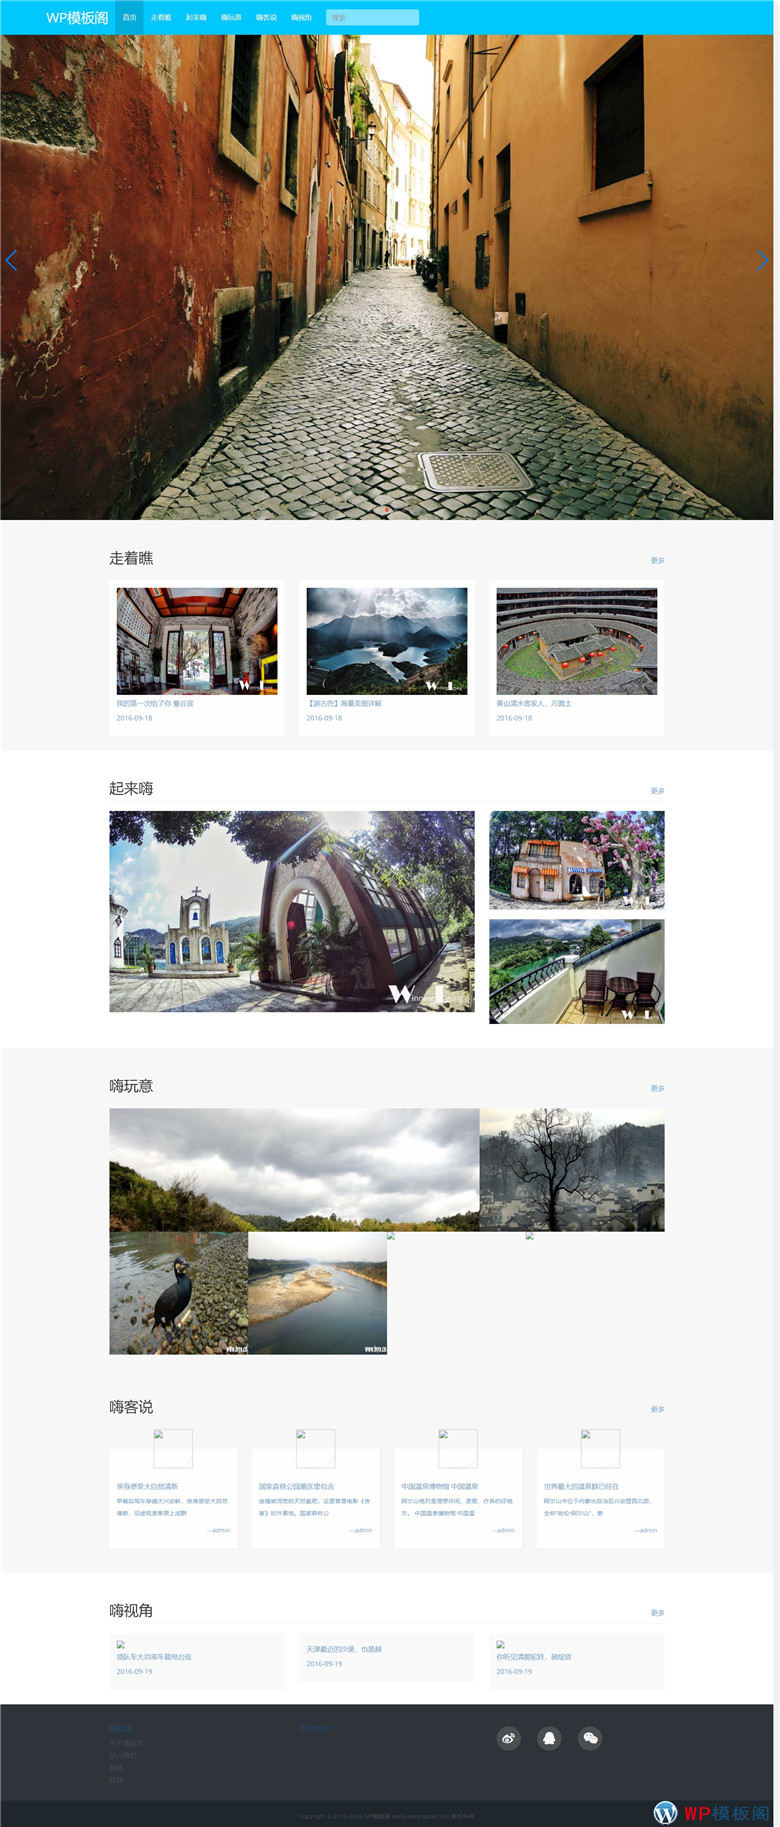 (自适应手机版)响应式旅游风景WordPress模板 相册相片展示类网站源演示图